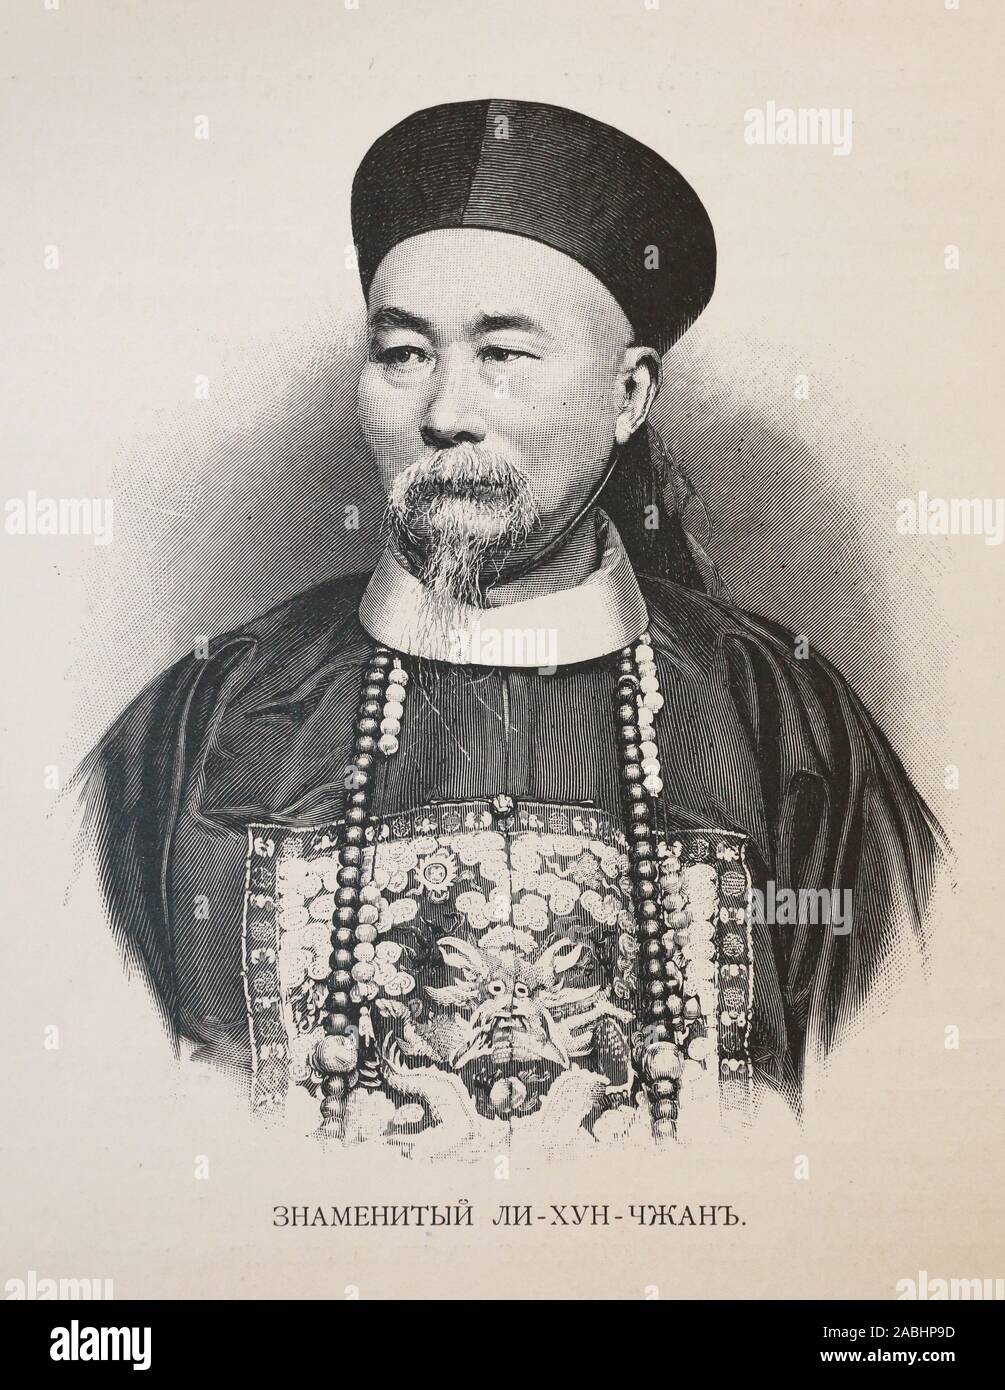 Portrait de Li Hongzhang. Gravure du xixe siècle. Li Hongzhang, Marquis Suyi (romanisés aussi que Li hongzhang) (15 février 1823 - 7 novembre 1901), était un homme politique chinois, général et diplomate de la fin des Qing. Il réprime plusieurs grandes rébellions et servi dans des postes importants dans la cour impériale des Qing, dont le vice-roi de Zhili, Hou-kouang Liangguang et. Banque D'Images